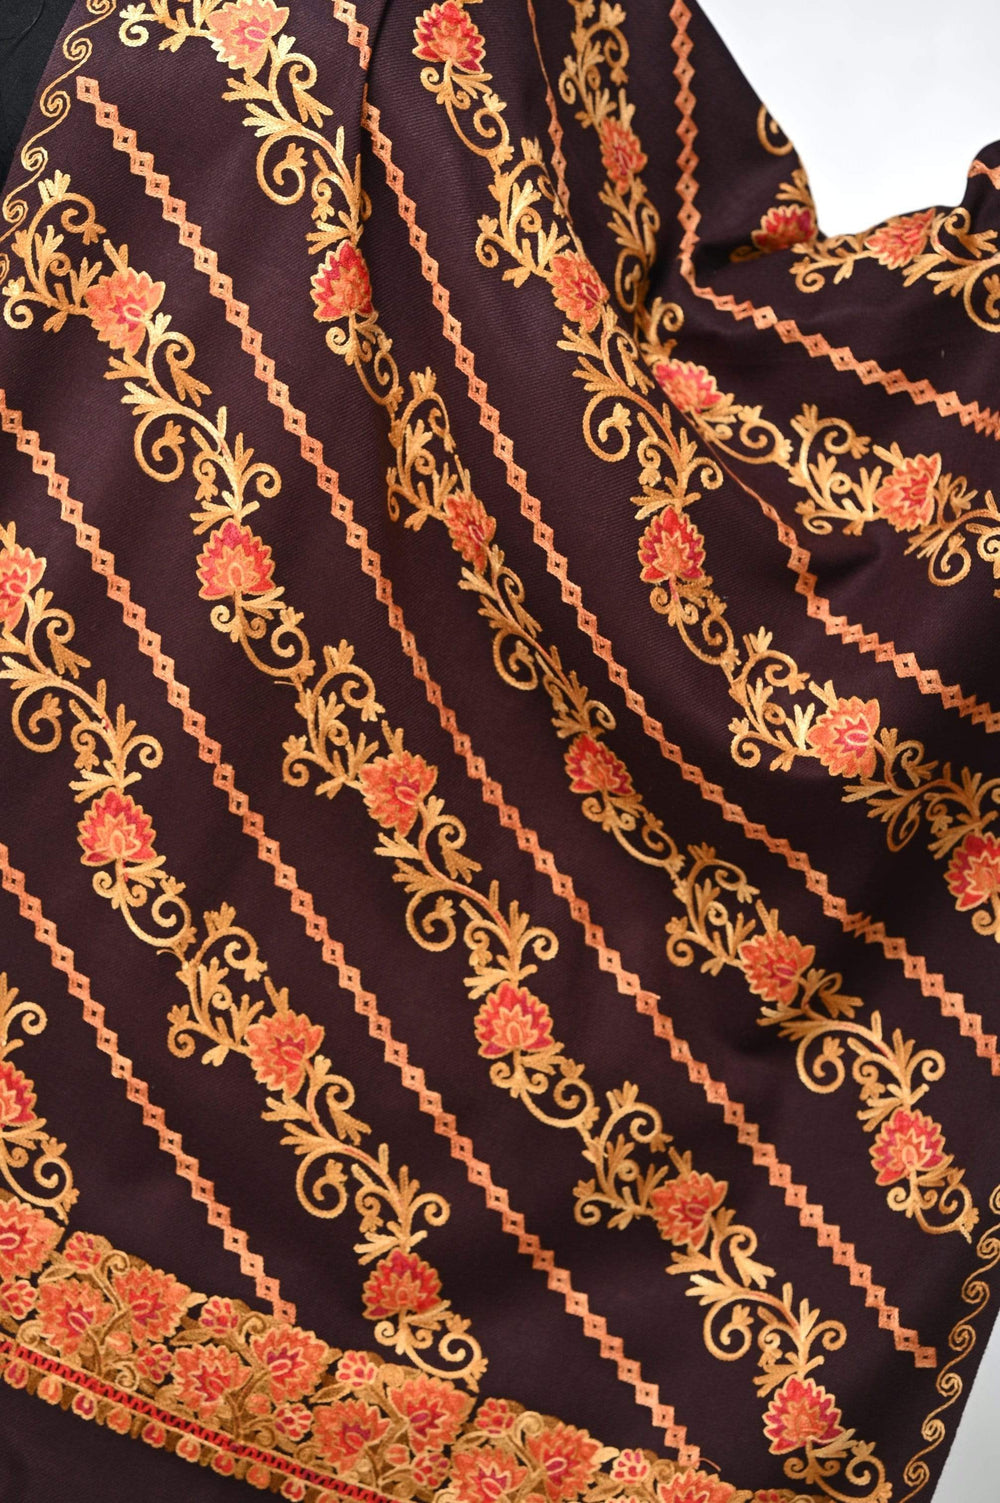 Pashwool 70x200 Pashwool Womens Kashmiri Embroidery Stole, Soft and Warm, Woollen Stole